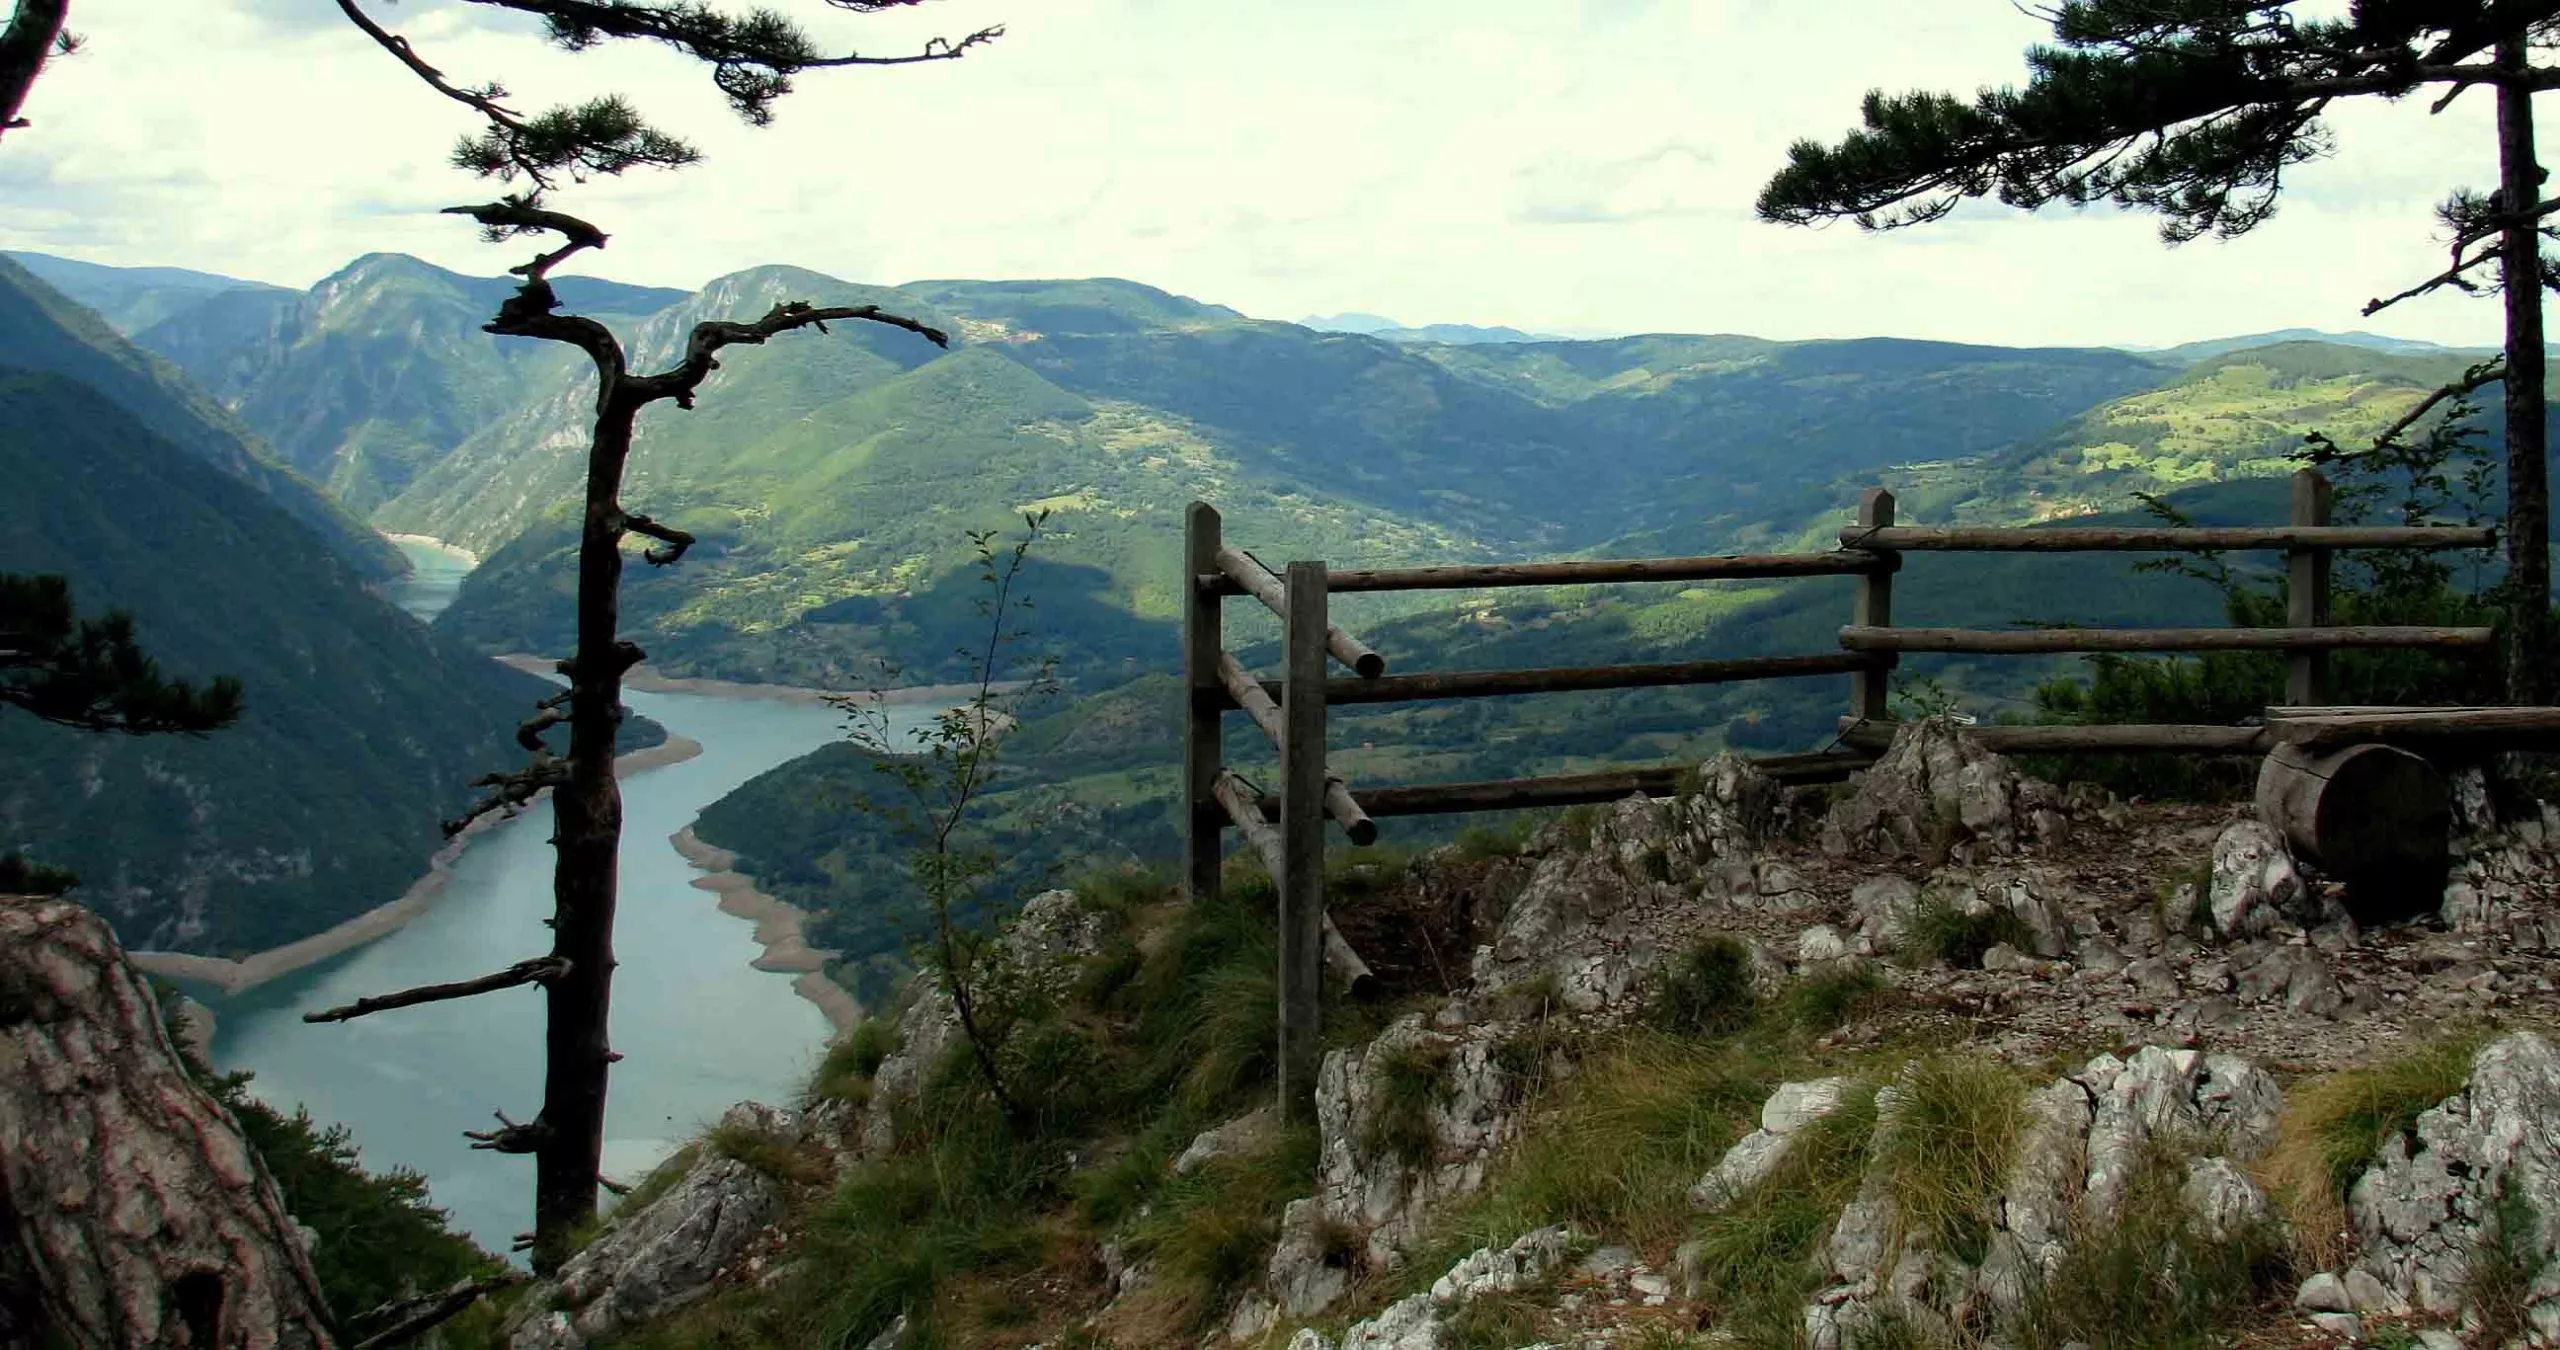 Tara in Serbia, Europe | Mountains,Trekking & Hiking - Rated 4.1